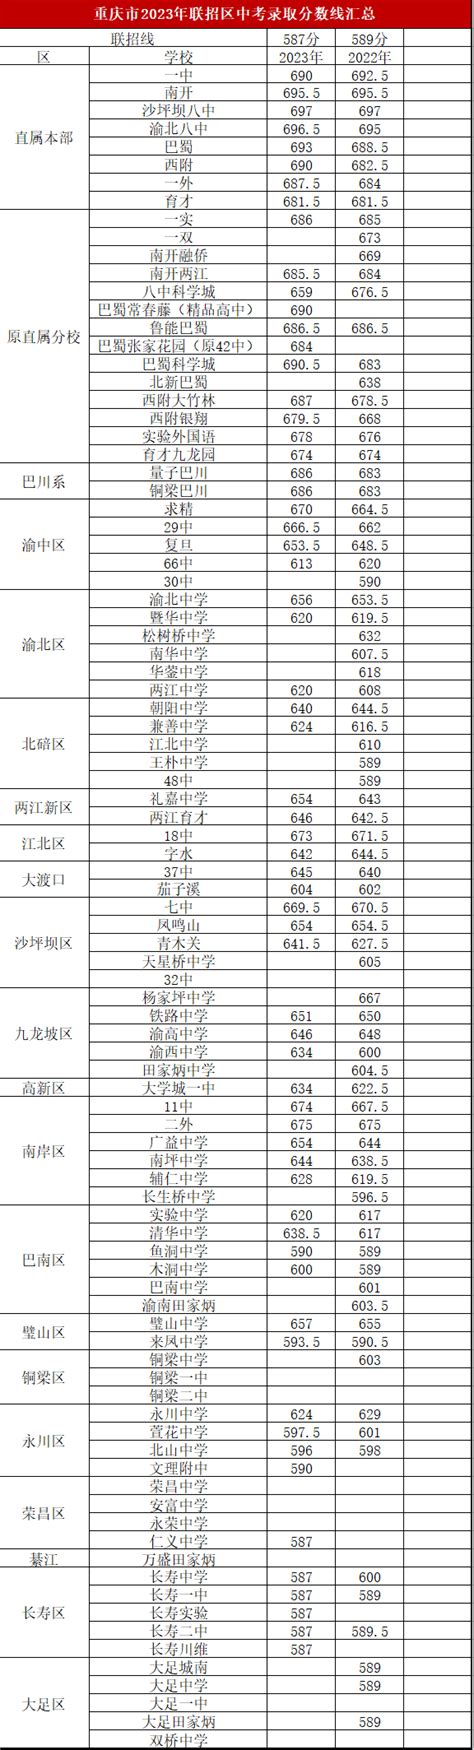 2019年备考:重庆中考志愿填报名单_中招考试_中考网